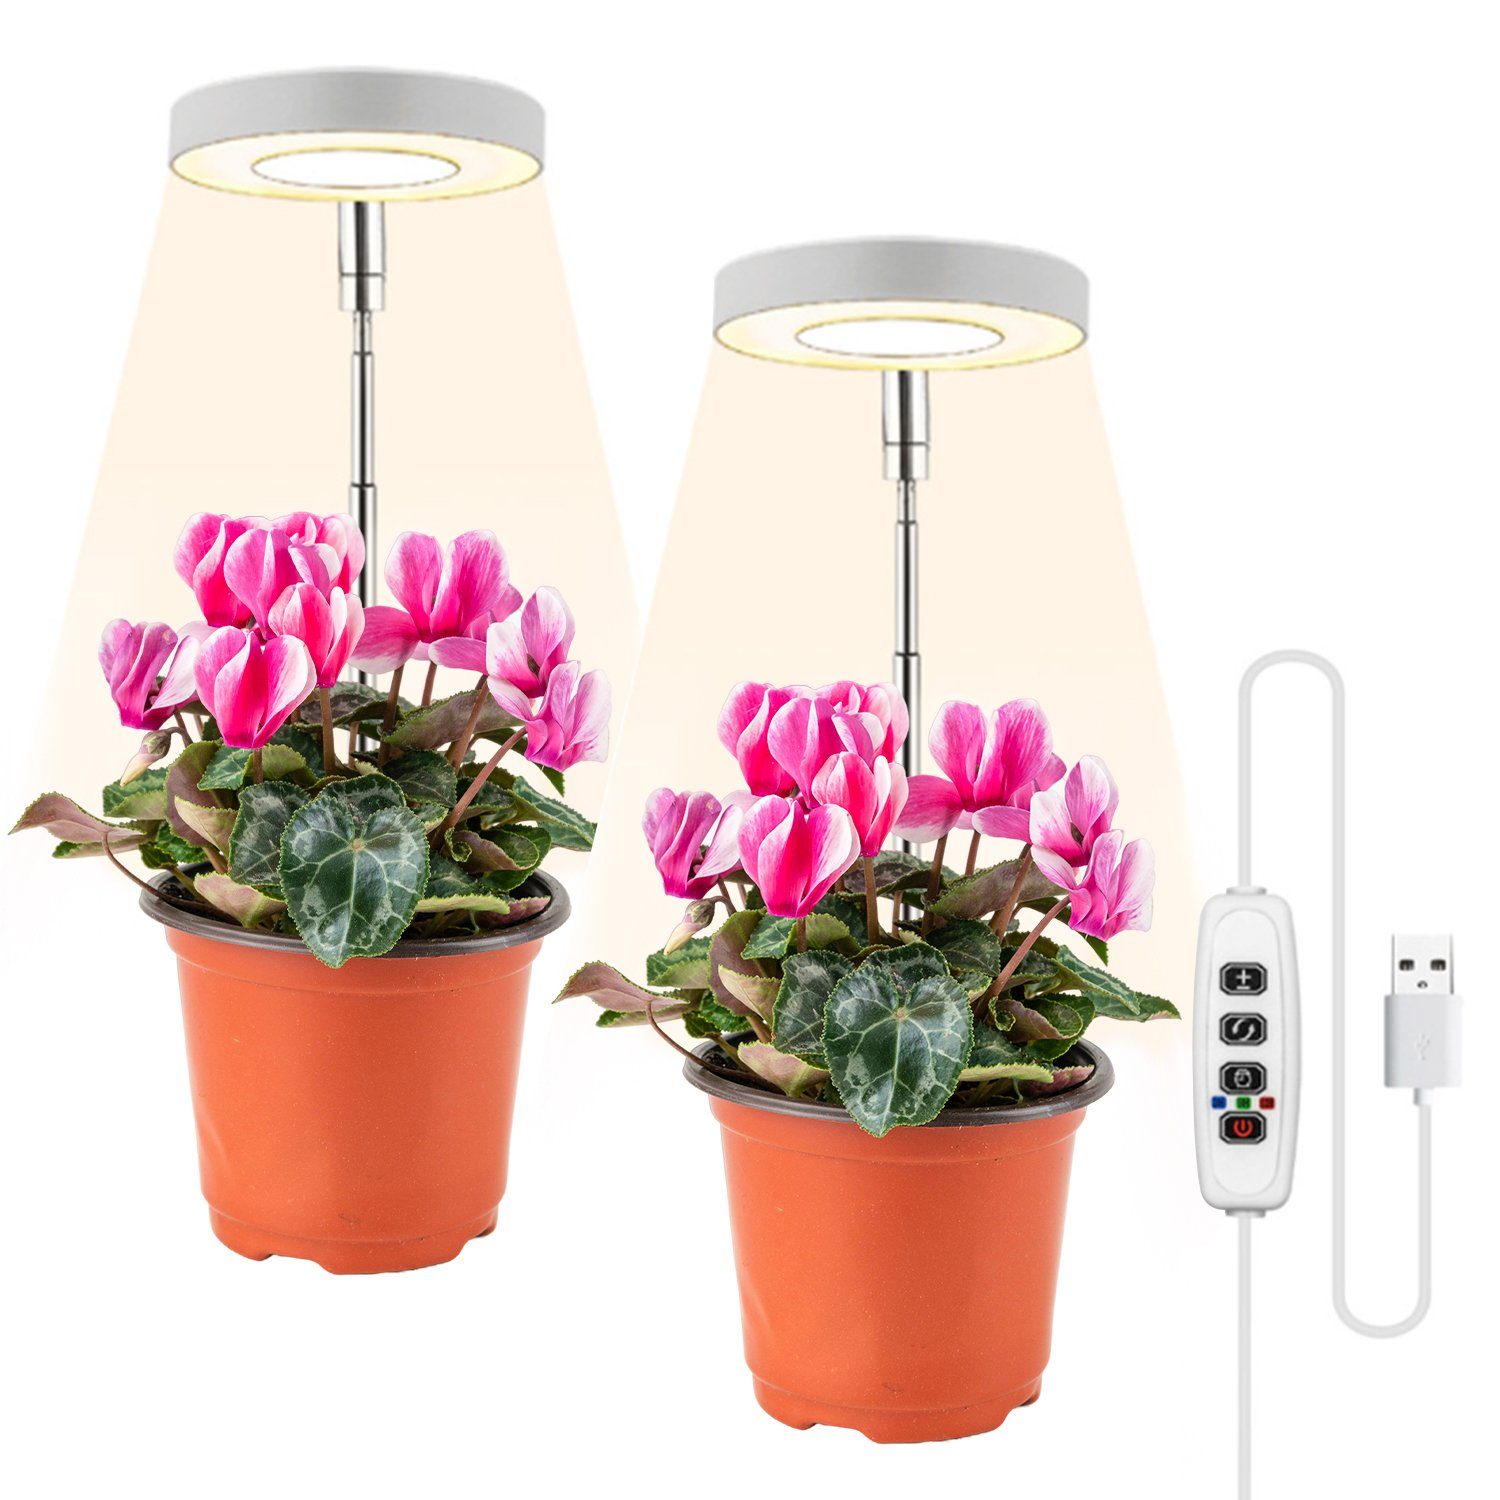 Lospitch Pflanzenlampe LED Pflanzenlicht Dimmbar 2 Ring Gewächshaus Wachstumslampe mit Timer, Gewächshaus Sukkulenten Blumen